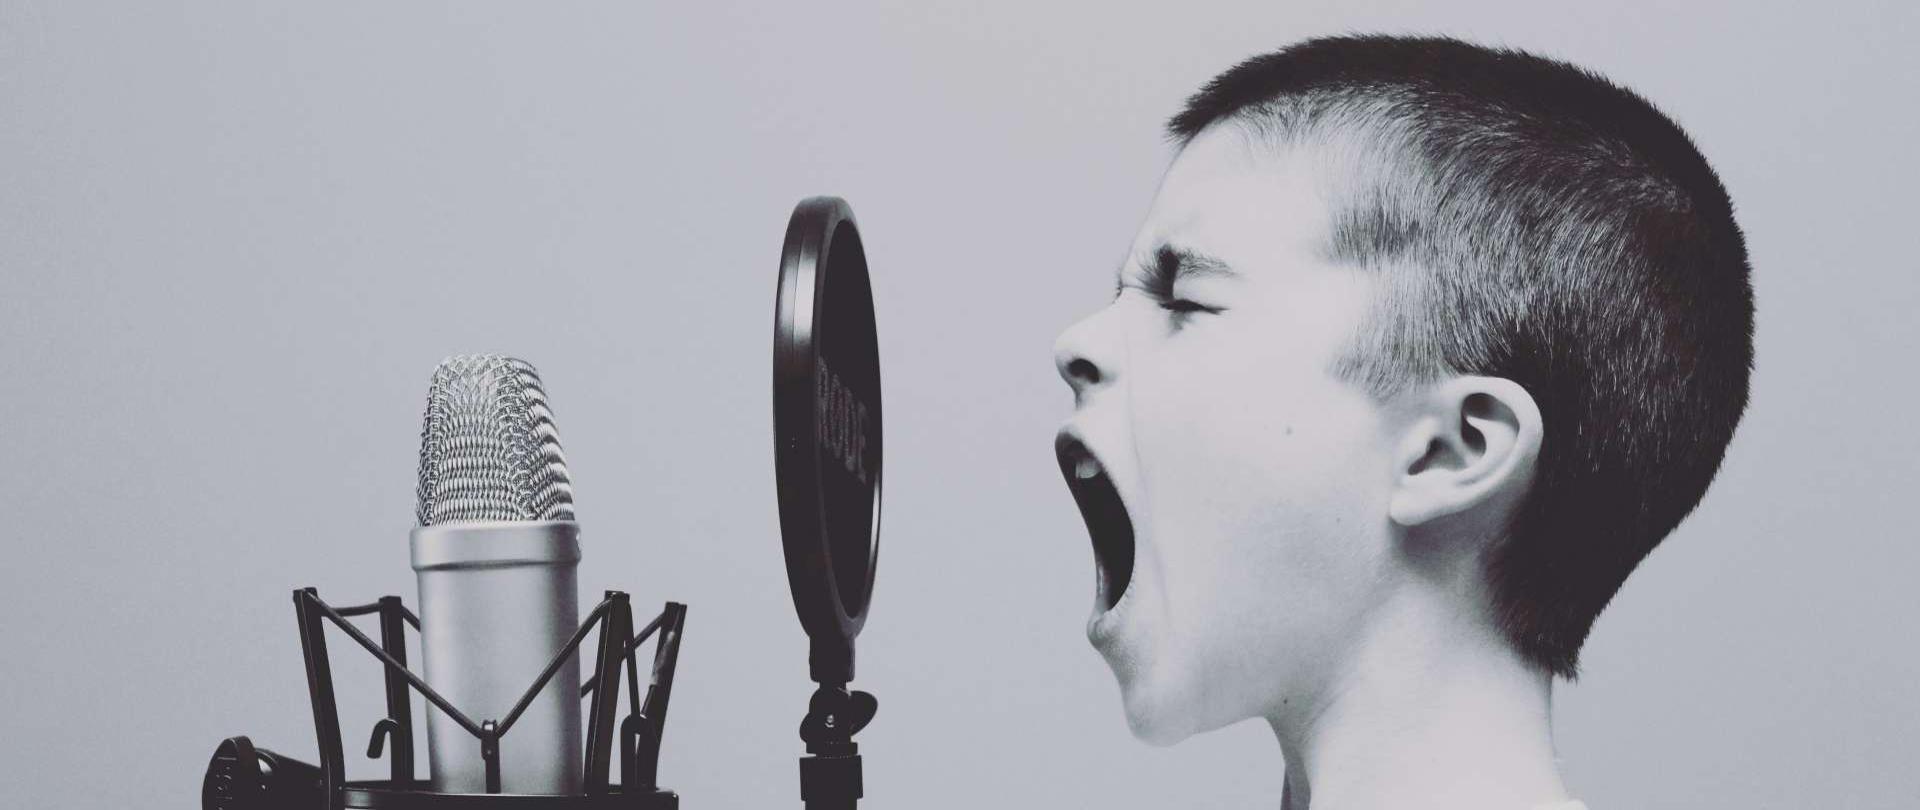 ciemnowłosy chłopiec ubrany w biały podkoszulek śpiewa do mikrofonu studyjnego